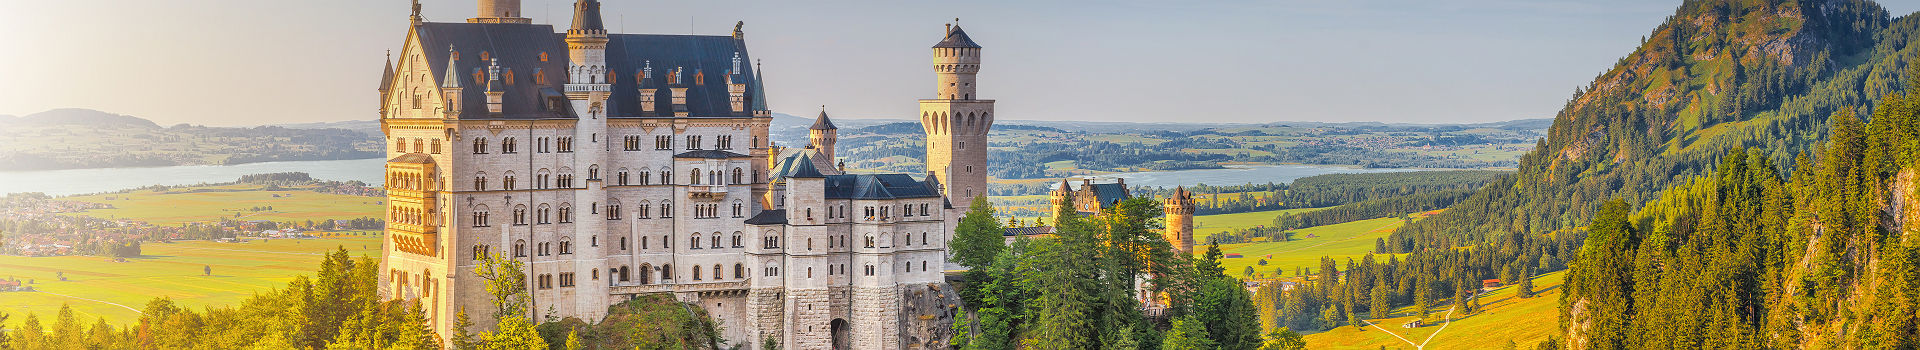 Allemagne - Vue sur le château Neuschwanstein près de Fussen